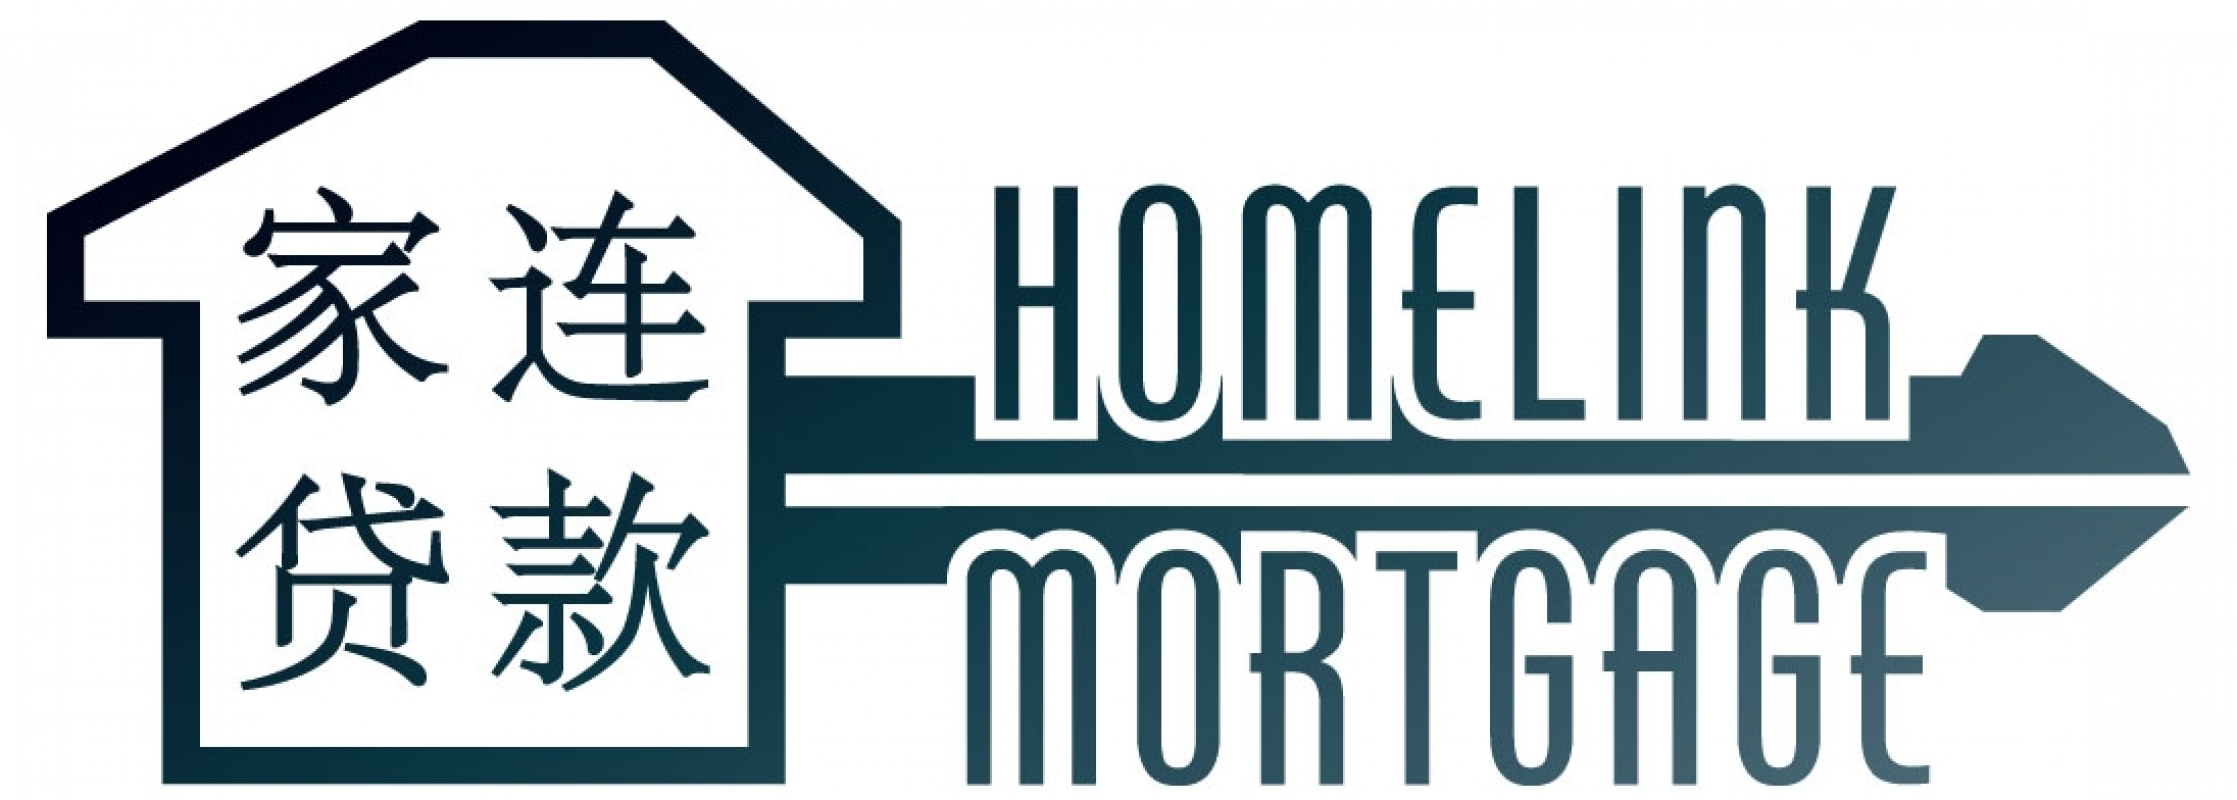 Homelink Mortgage